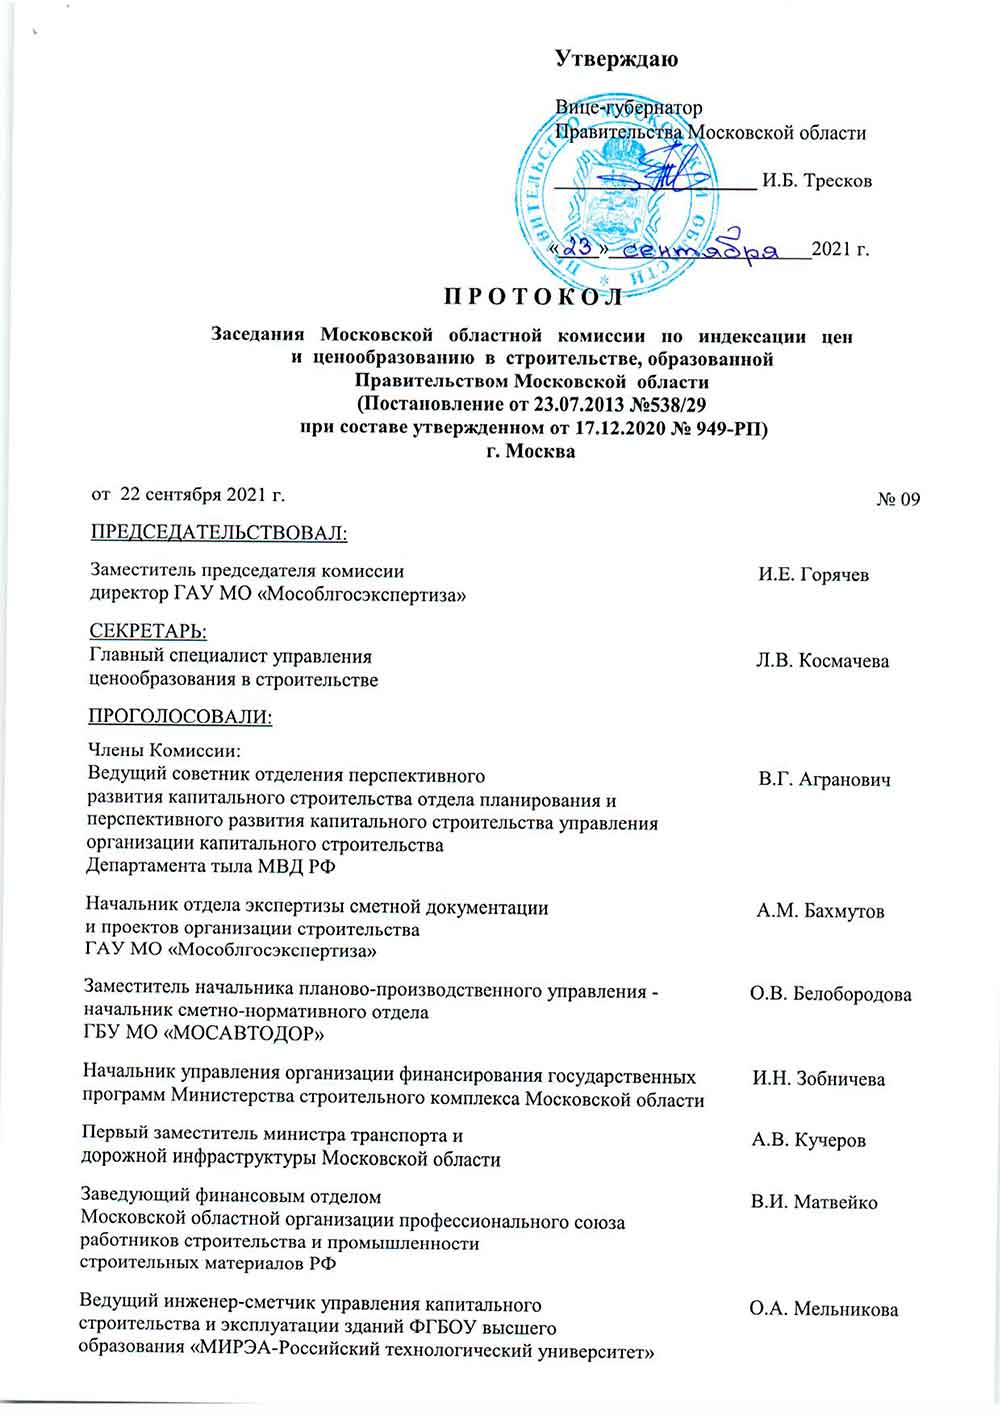 Протокол Мособлгосэкспертизы №09 от 22.09.2021 года